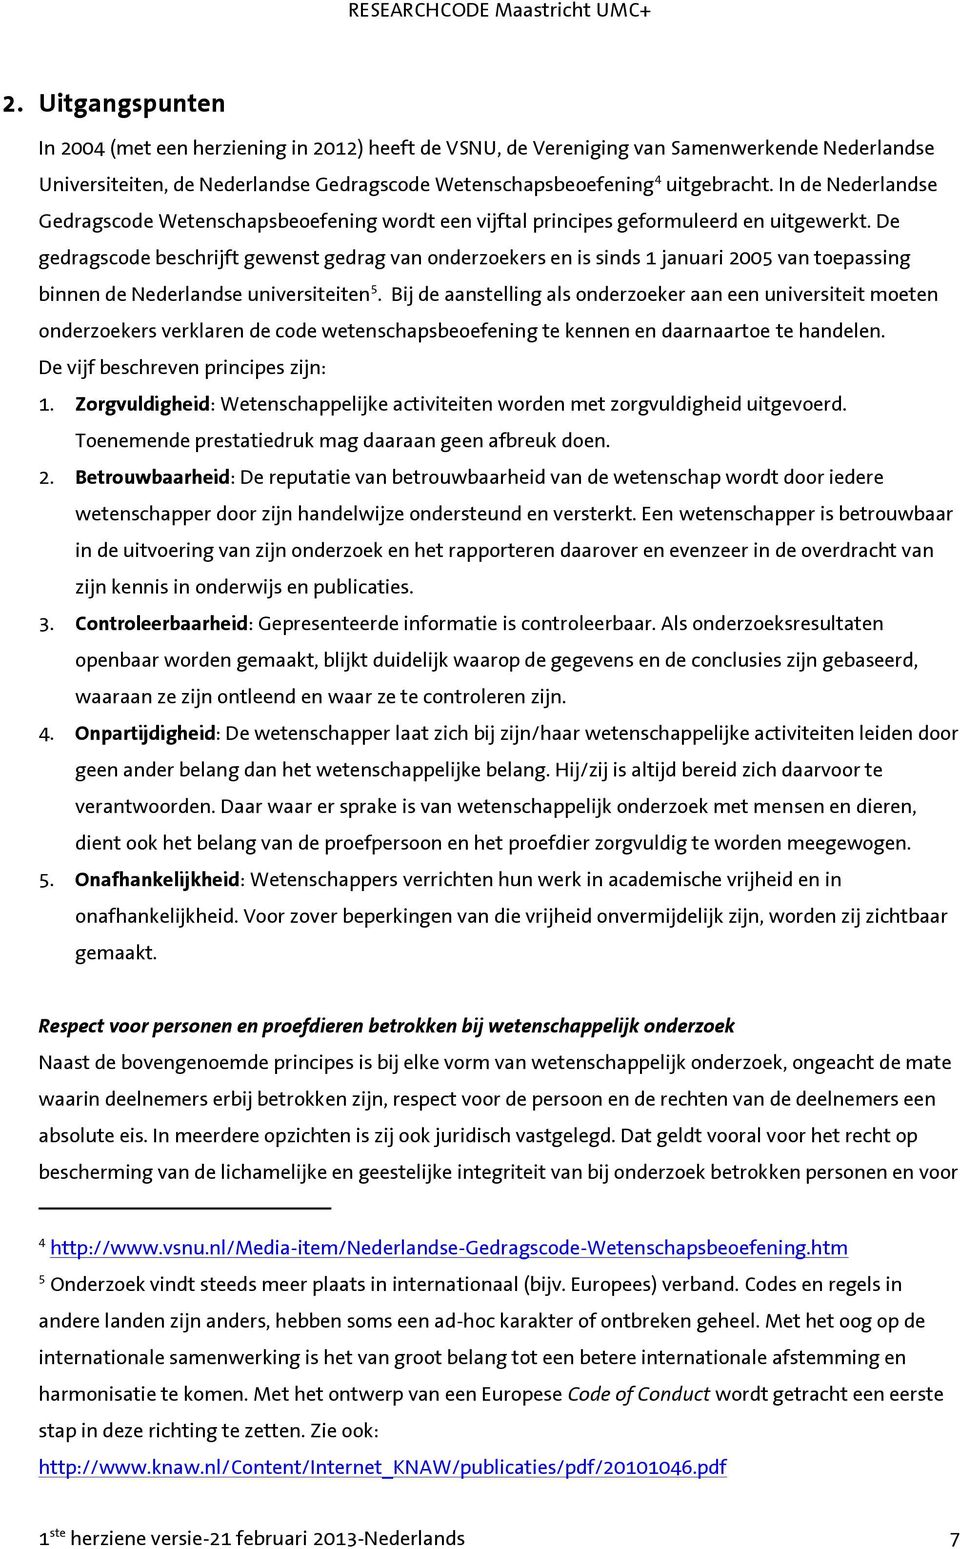 De gedragscode beschrijft gewenst gedrag van onderzoekers en is sinds 1 januari 2005 van toepassing binnen de Nederlandse universiteiten 5.